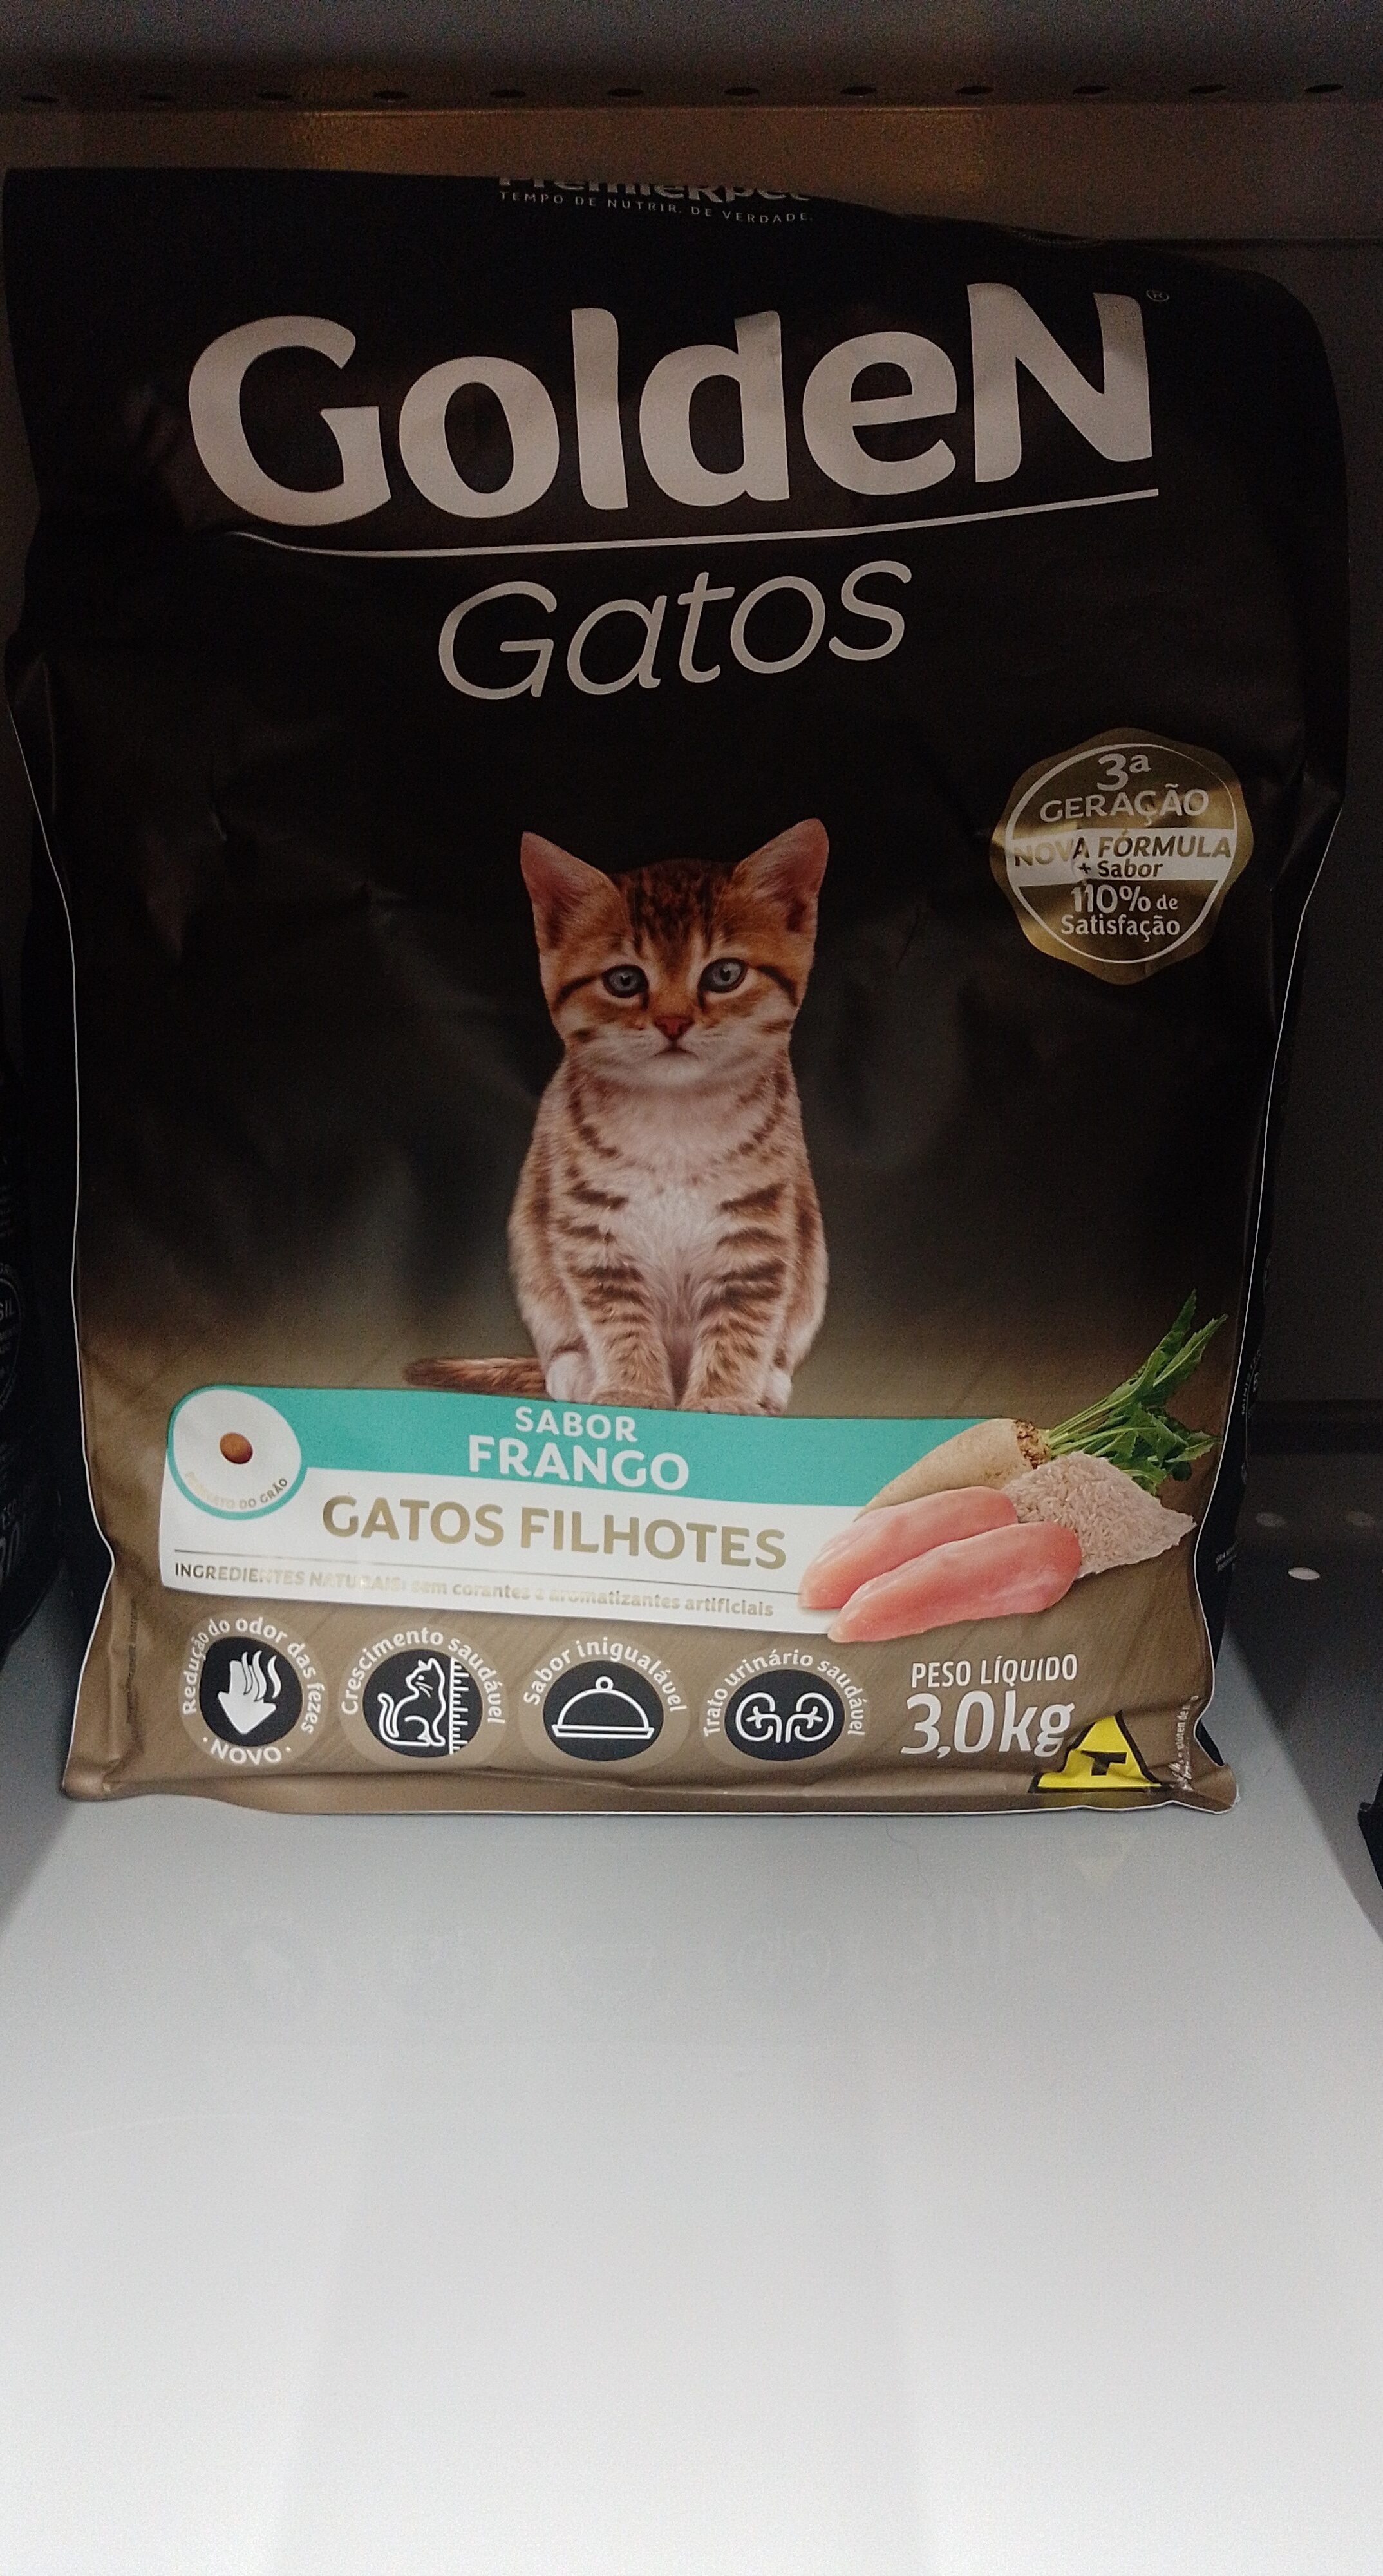 Golden Gatos Filhotes 3kg - Product - pt